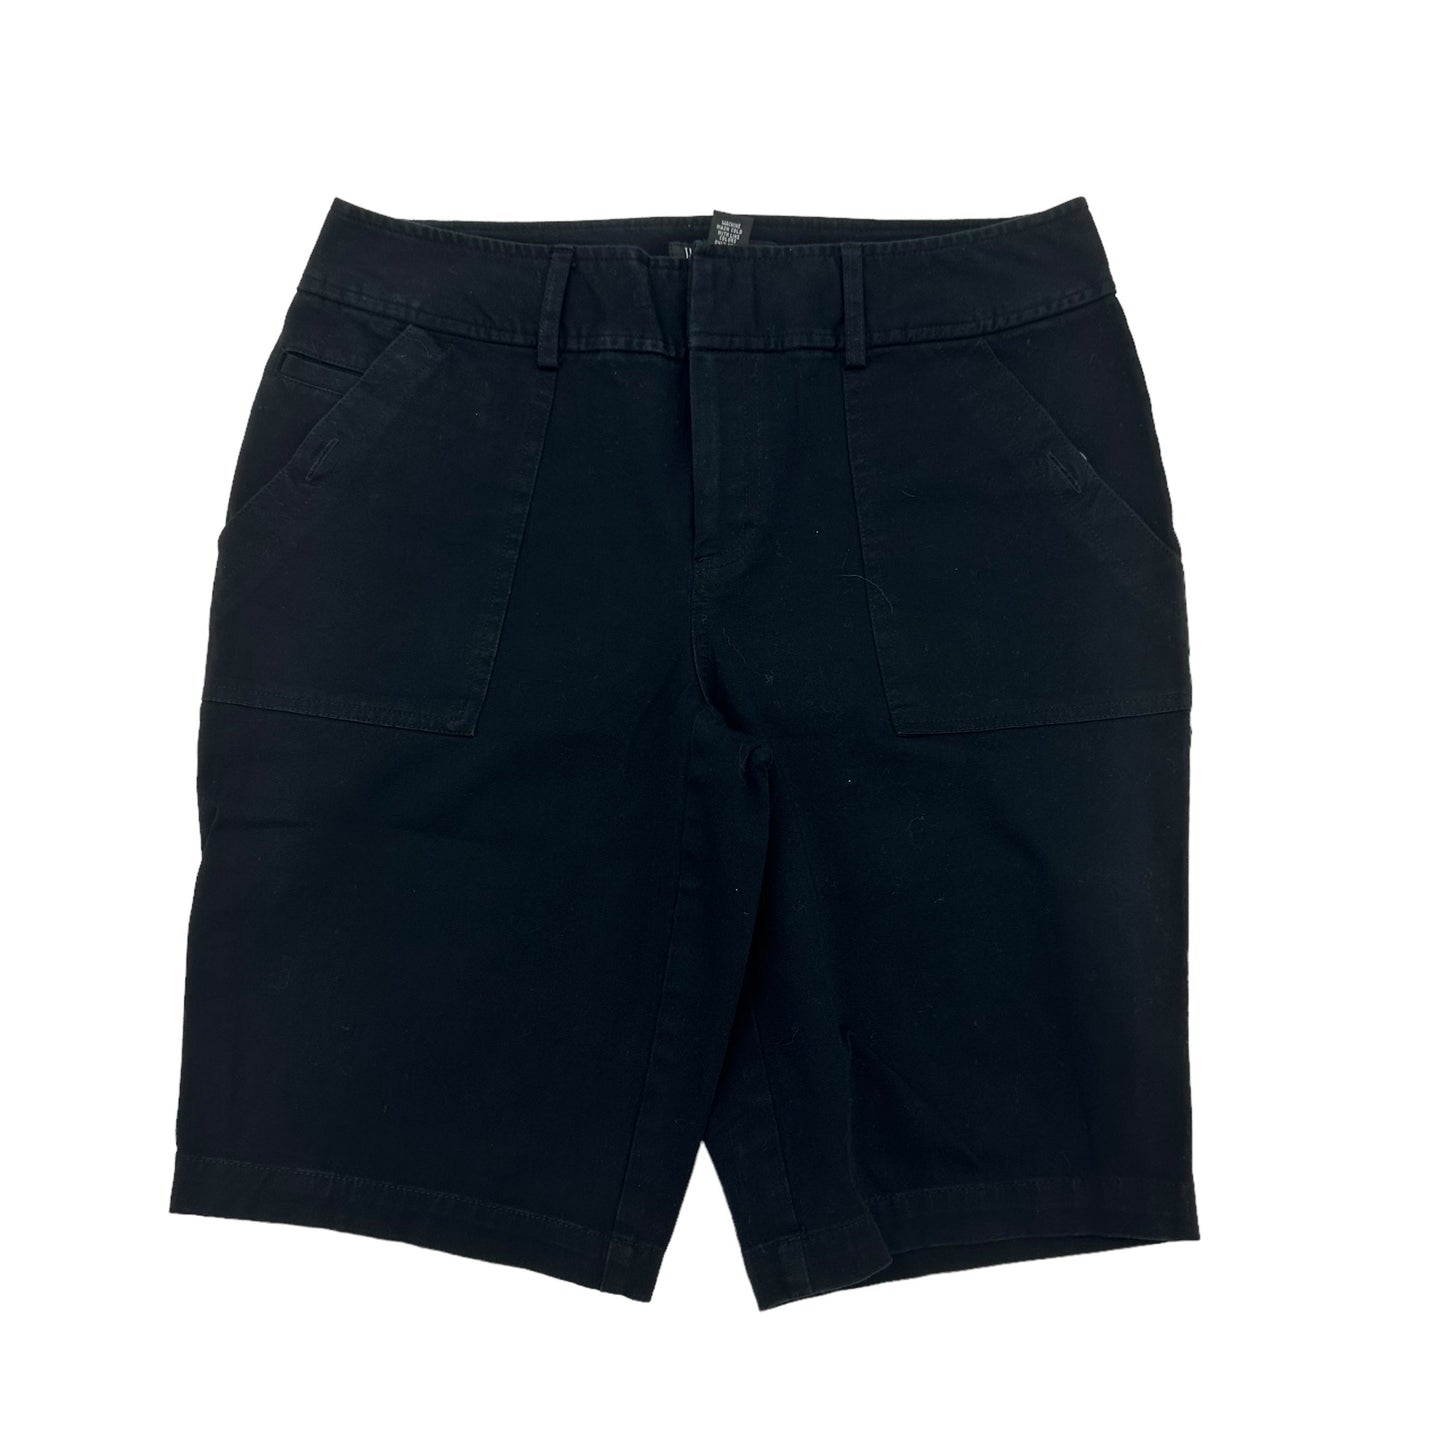 Black Shorts Inc, Size 6